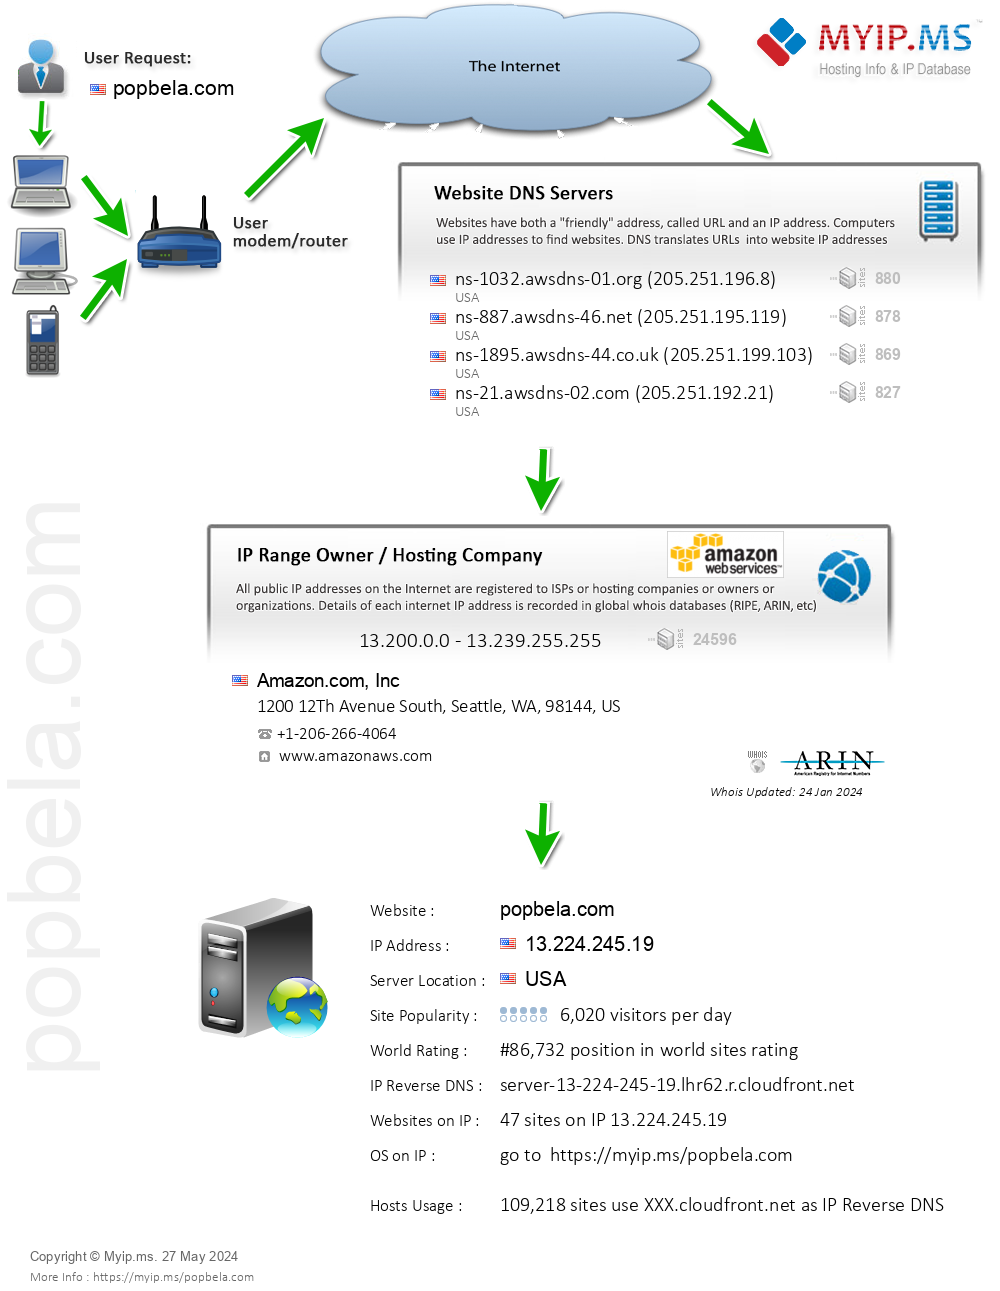 Popbela.com - Website Hosting Visual IP Diagram